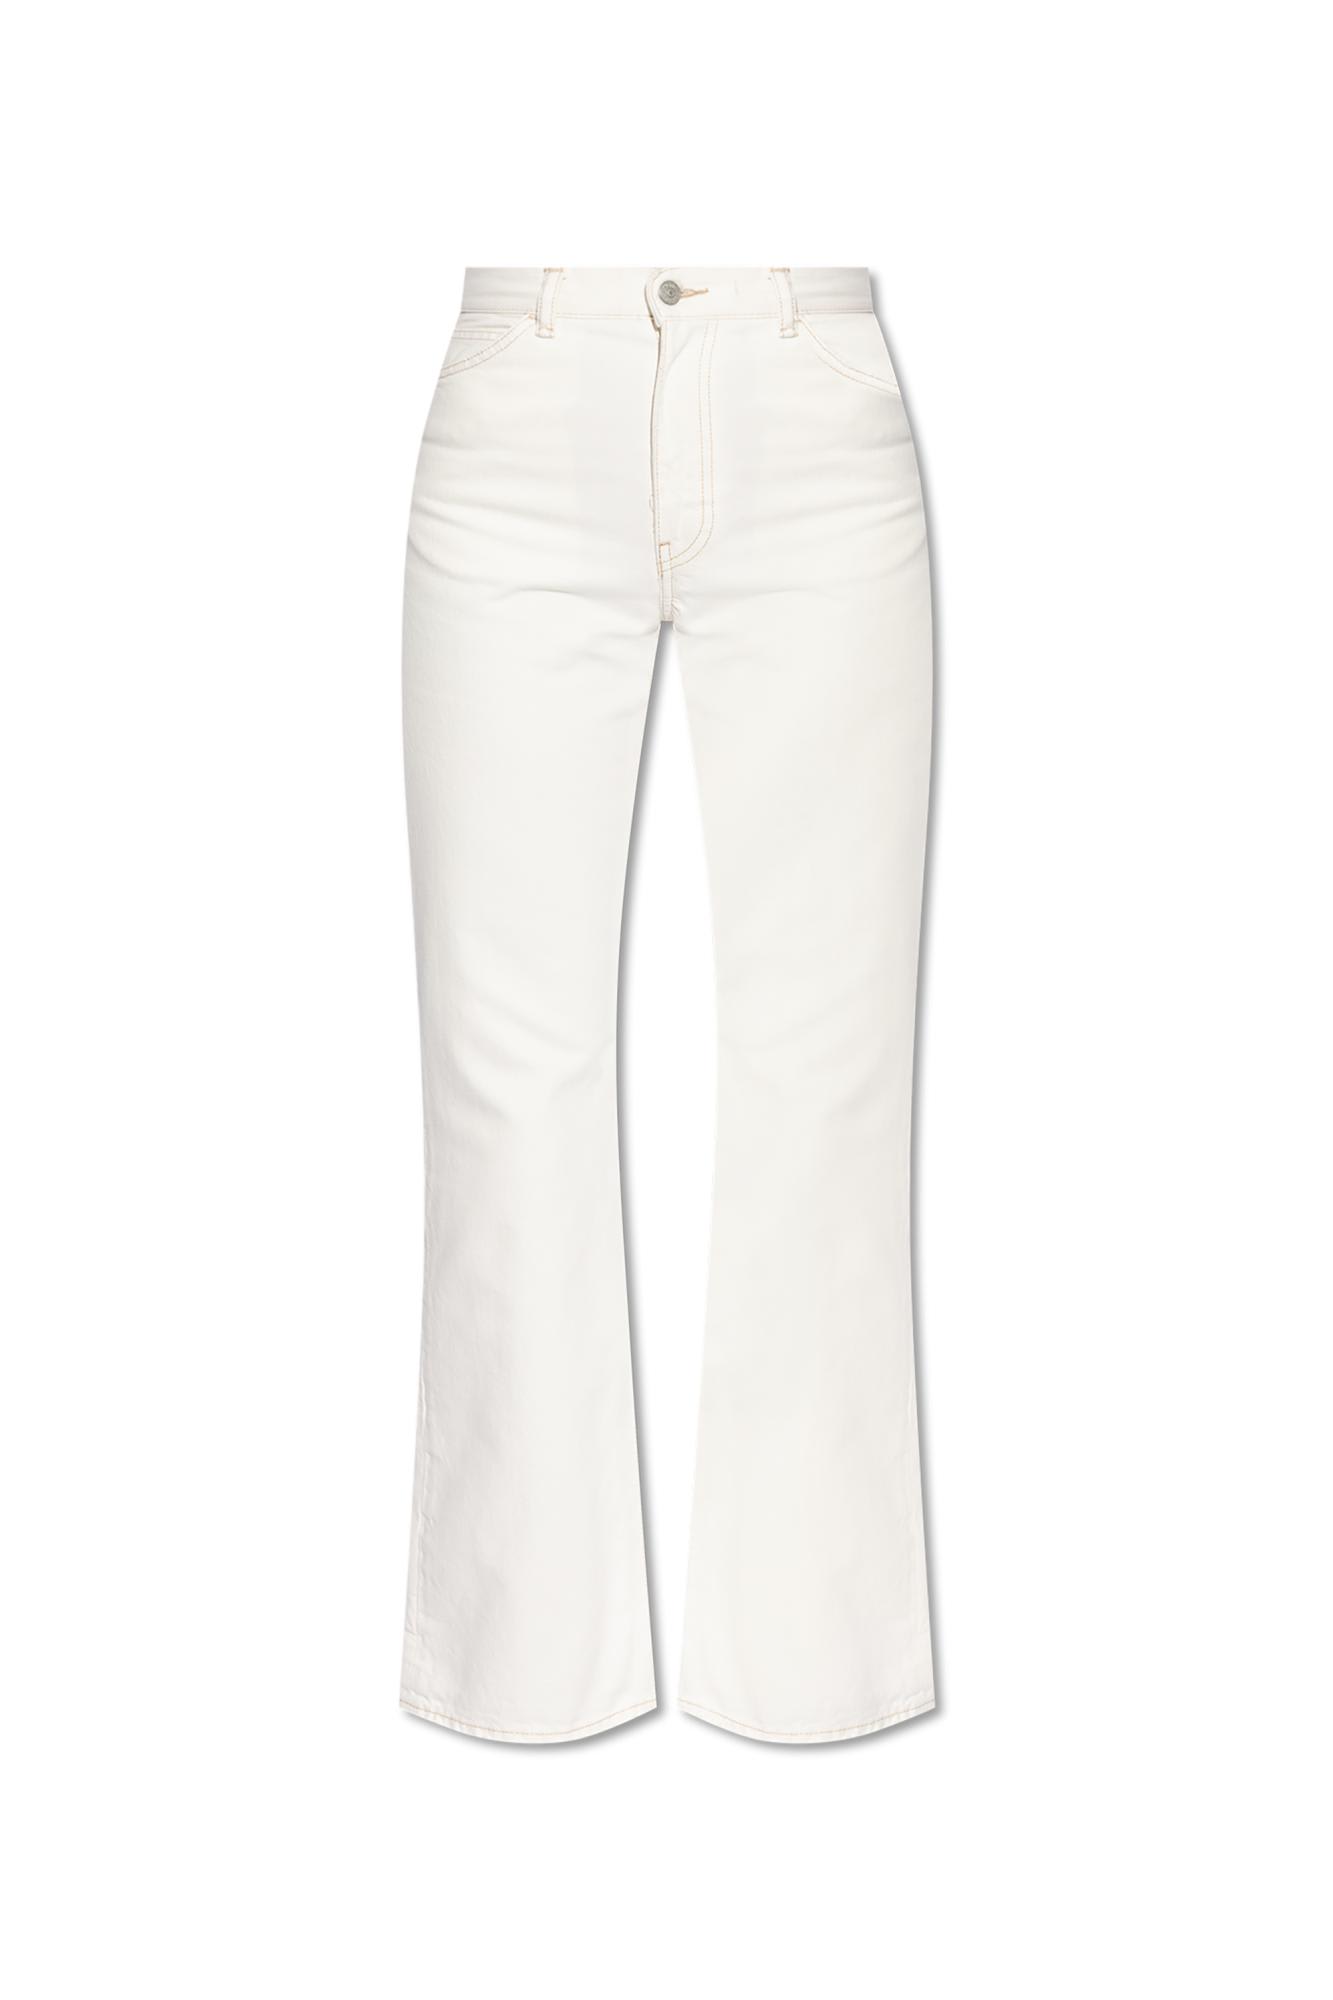 Acne Studios 1977 Jeans In White